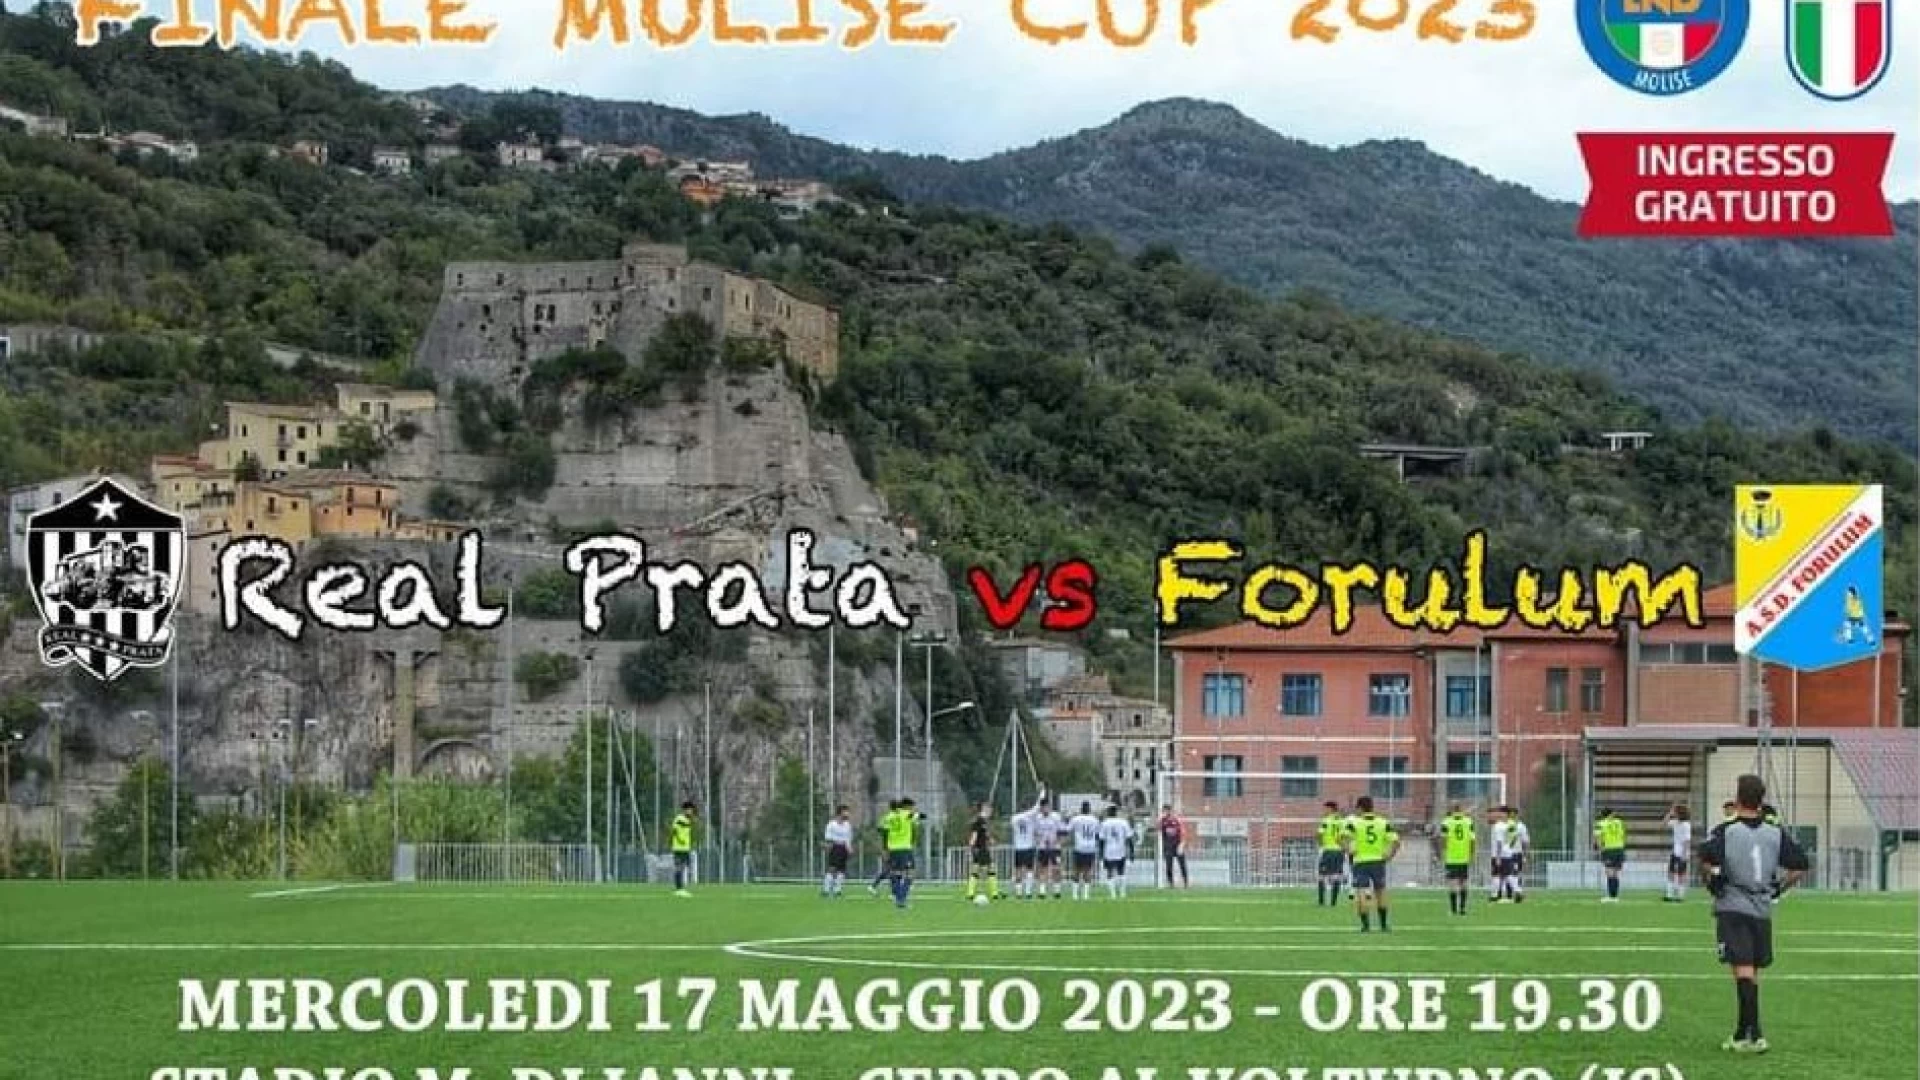 Molise Cup prima categoria, domani sera la finalissima tra Real Prata e Forulum. La gara si disputerà al “Mario Di Ianni” di Cerro al Volturno.